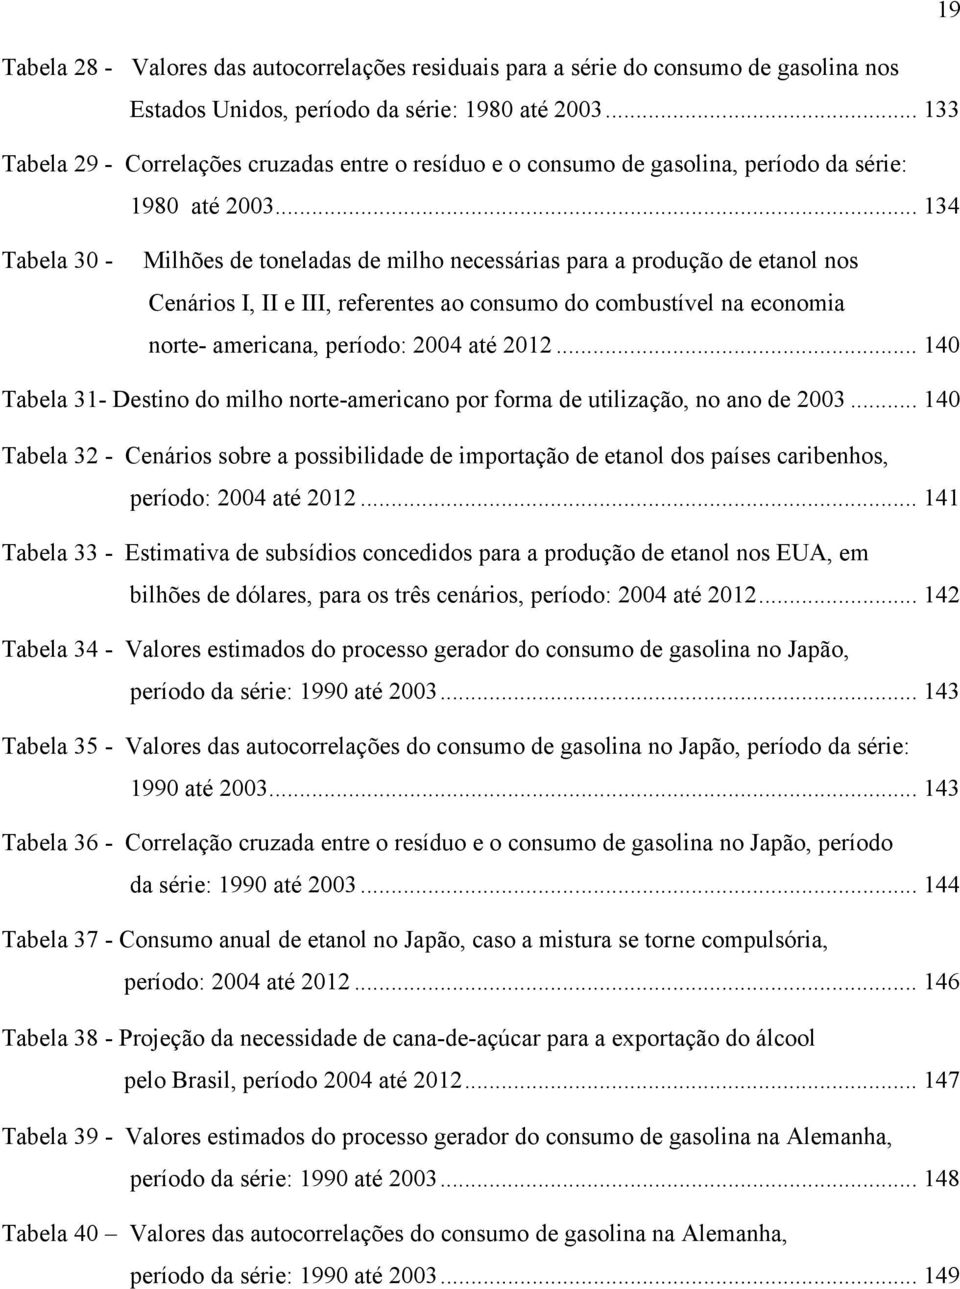 .. 134 Tabela 30 - Milhões de oneladas de milho necessárias para a produção de eanol nos Cenários I, II e III, referenes ao consumo do combusível na economia nore- americana, período: 2004 aé 2012.